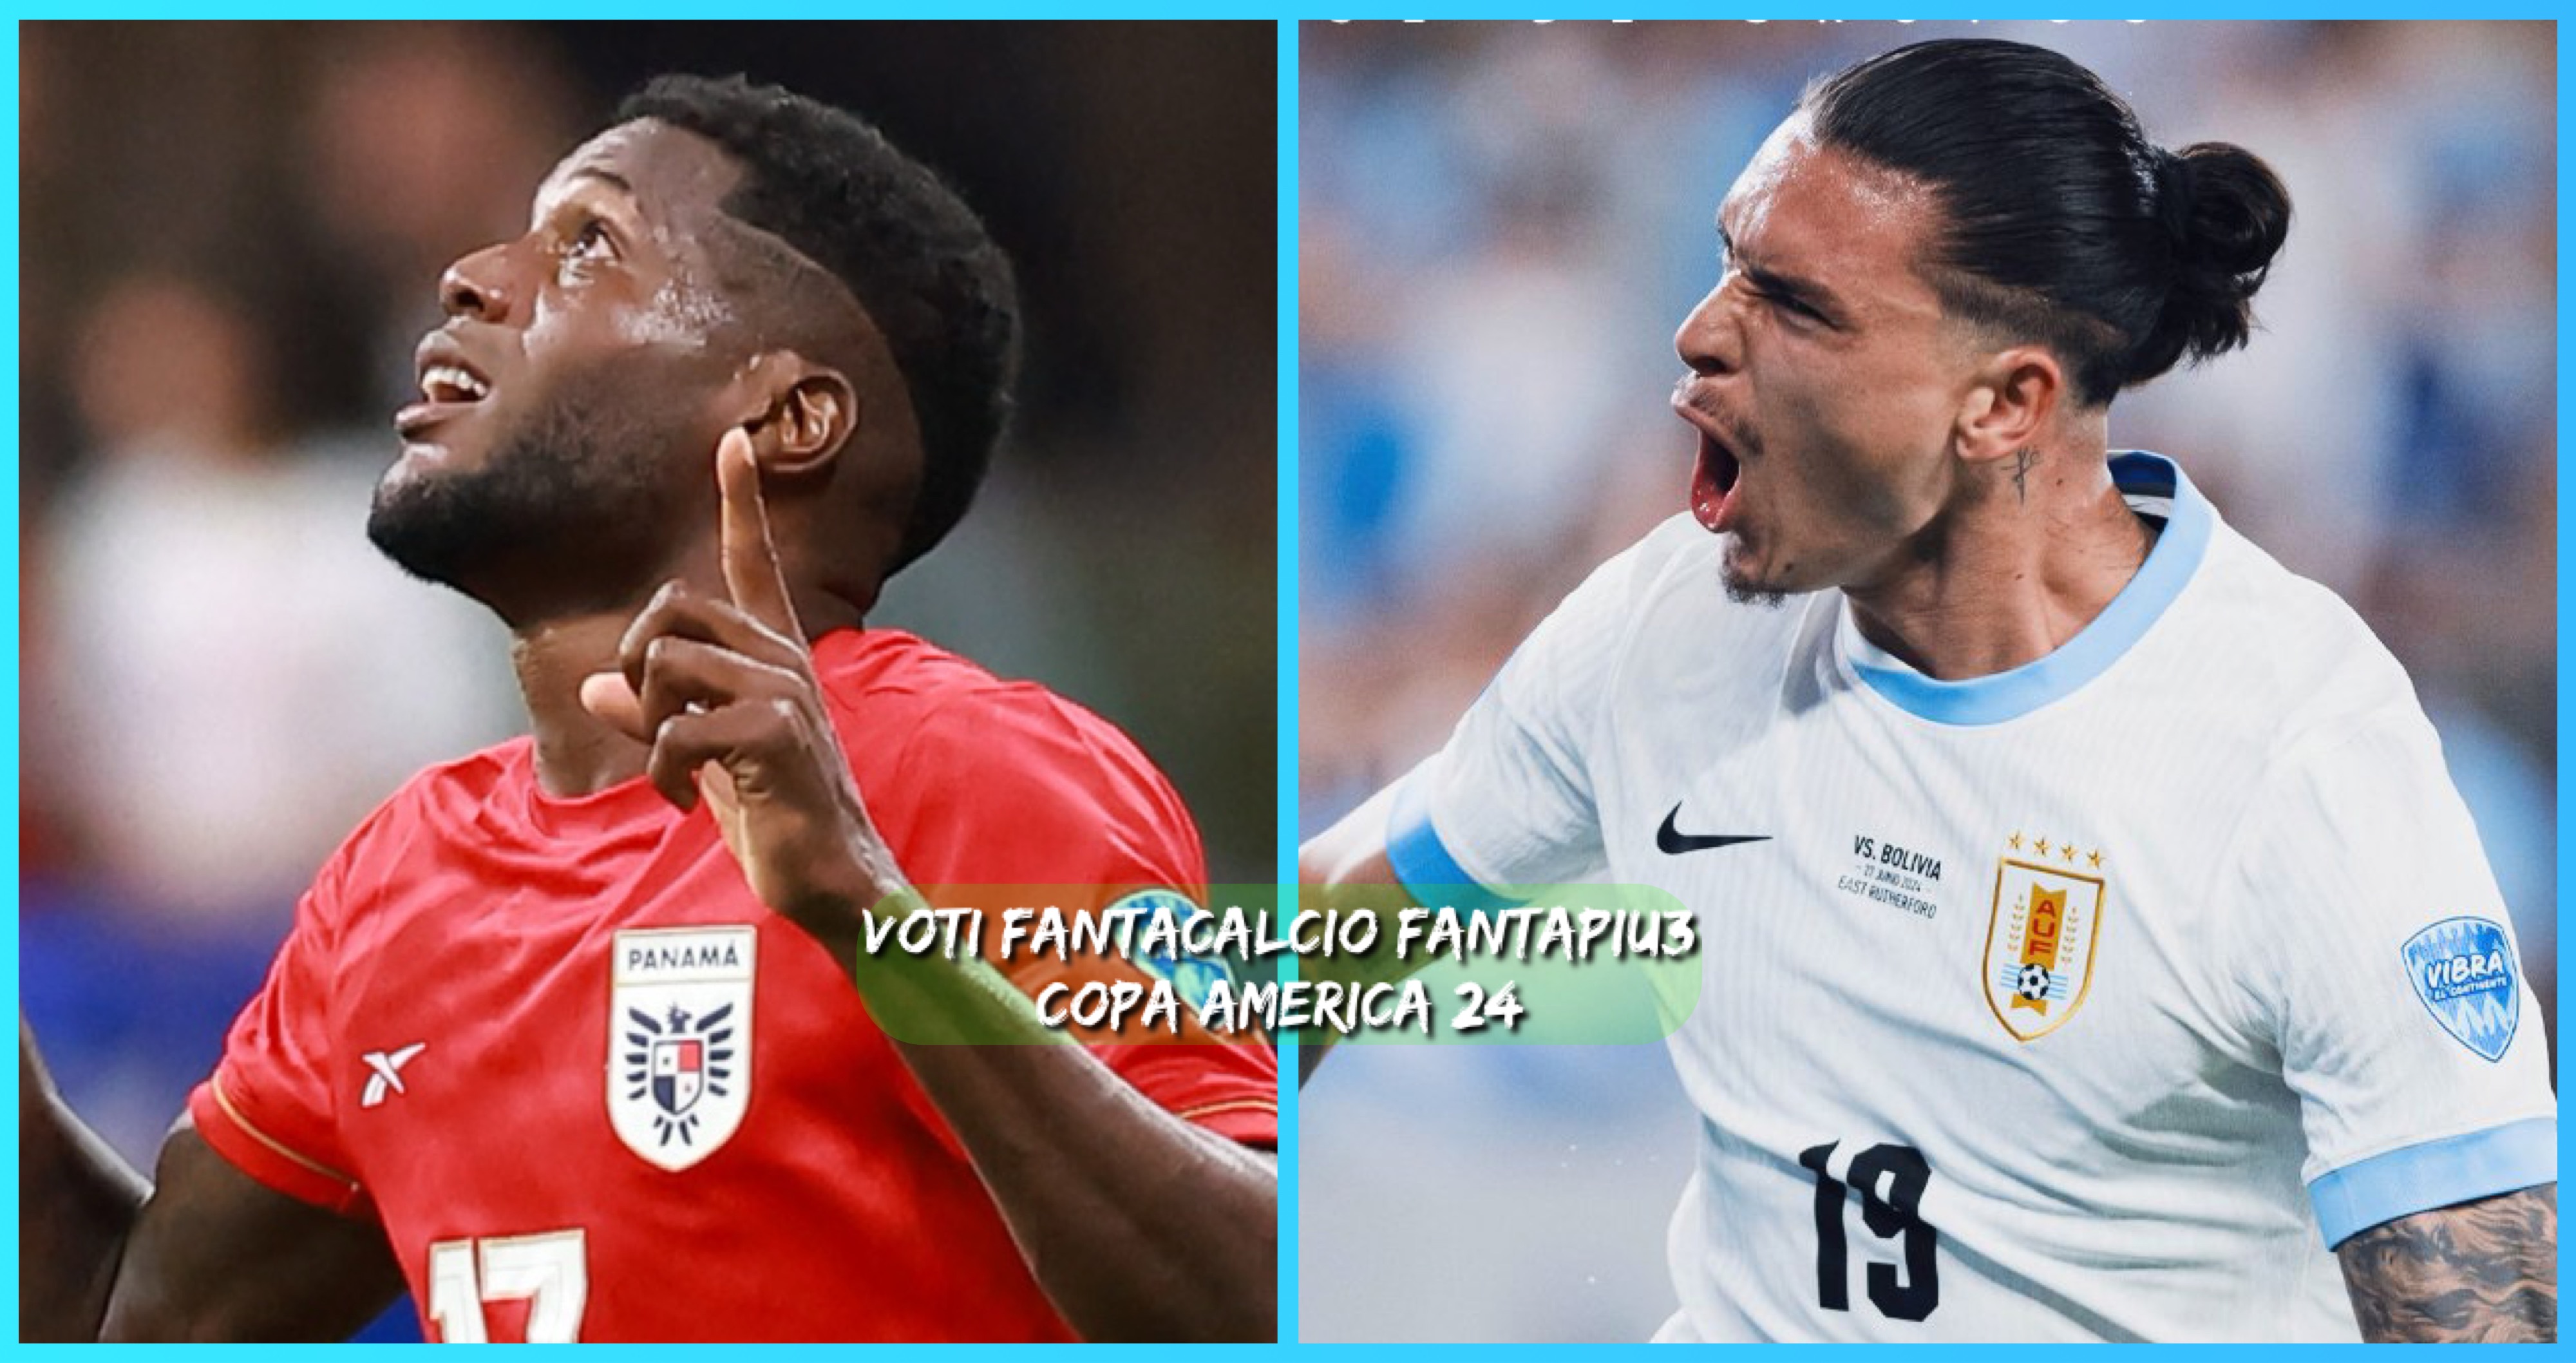 Voti fantacalcio Copa America 24 redazione Fantapiu3